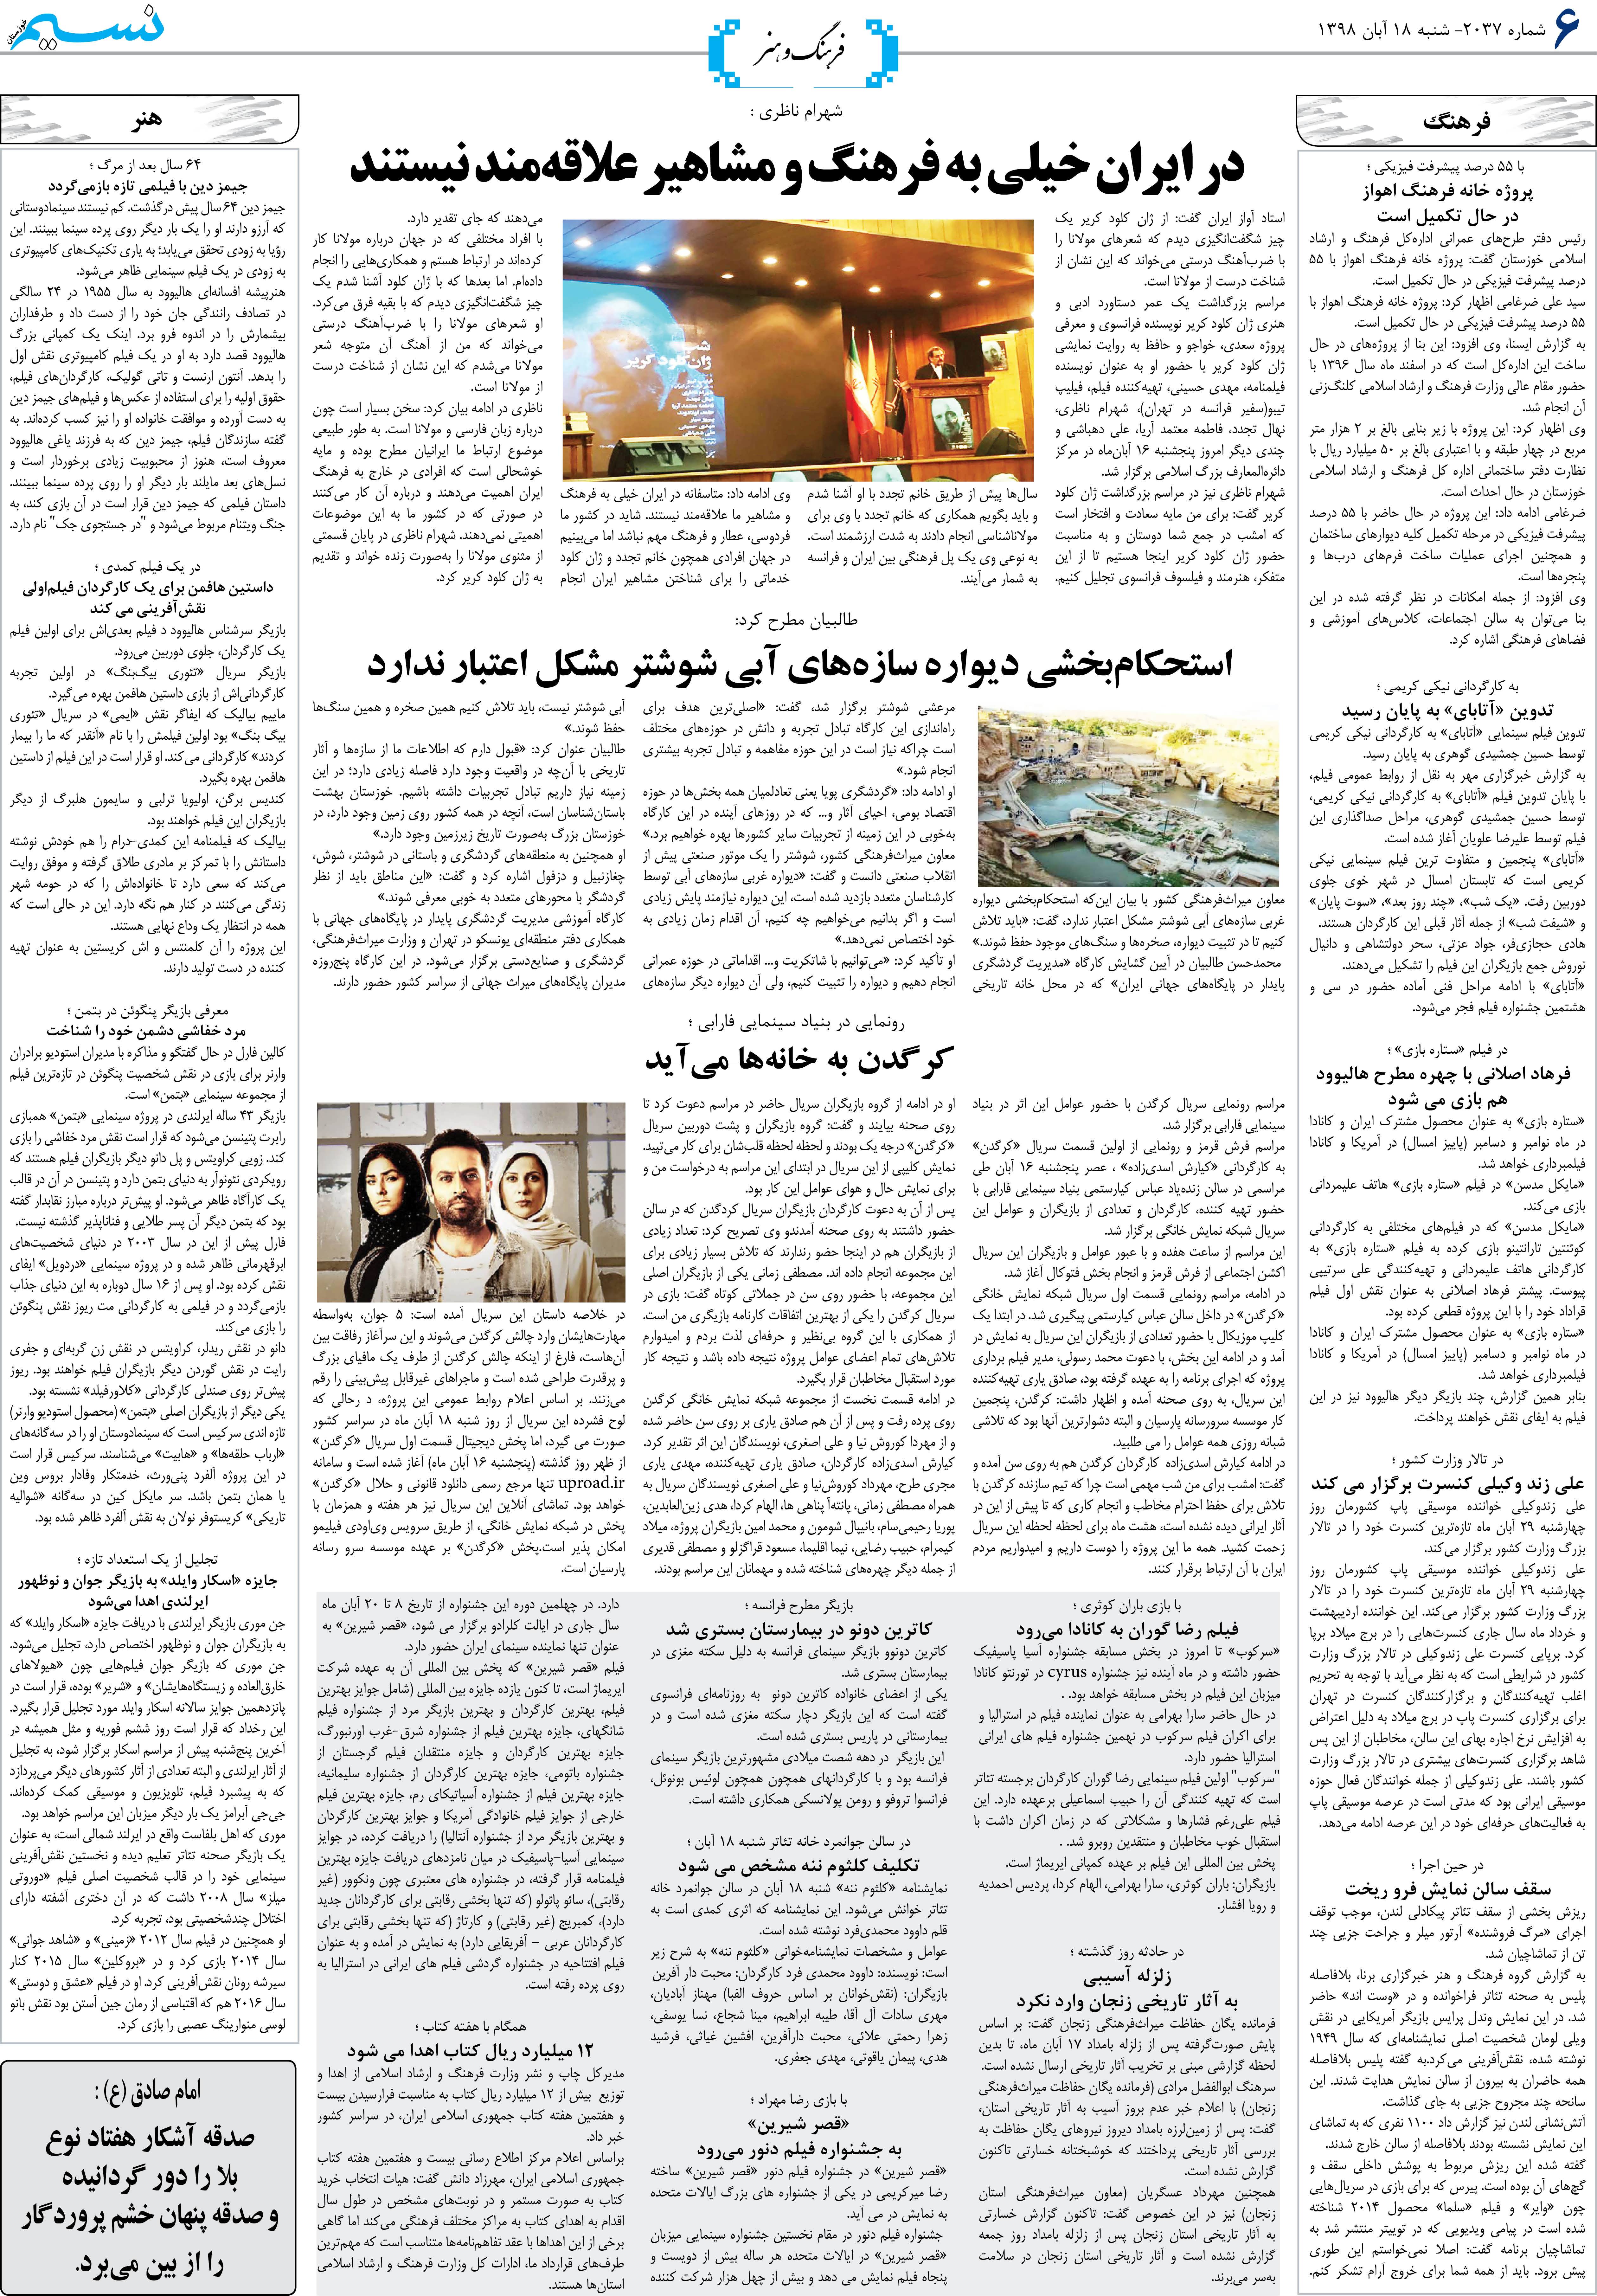 صفحه فرهنگ و هنر روزنامه نسیم شماره 2037